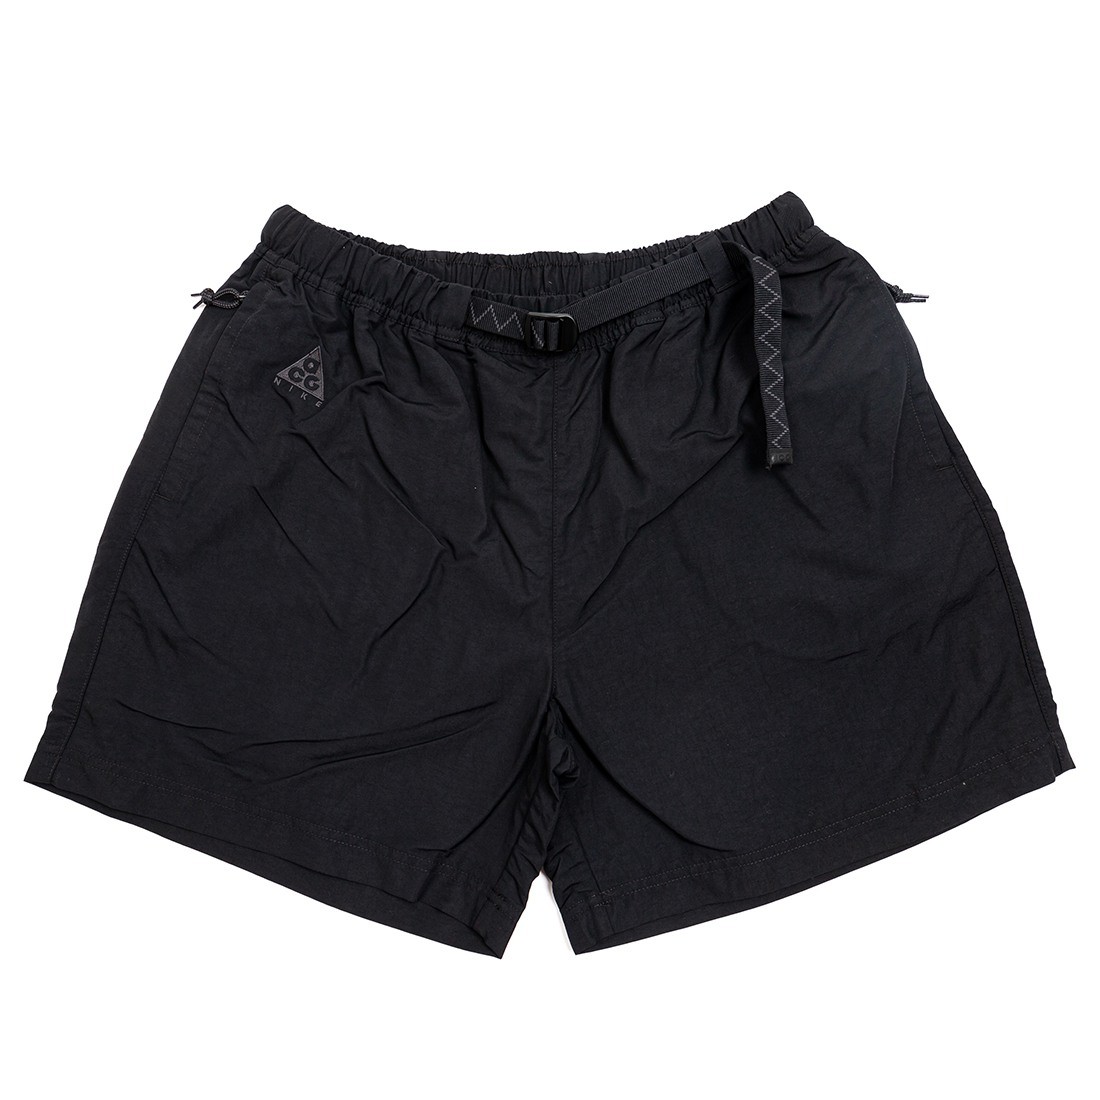 Nike Men Acg Woven Shorts (black)